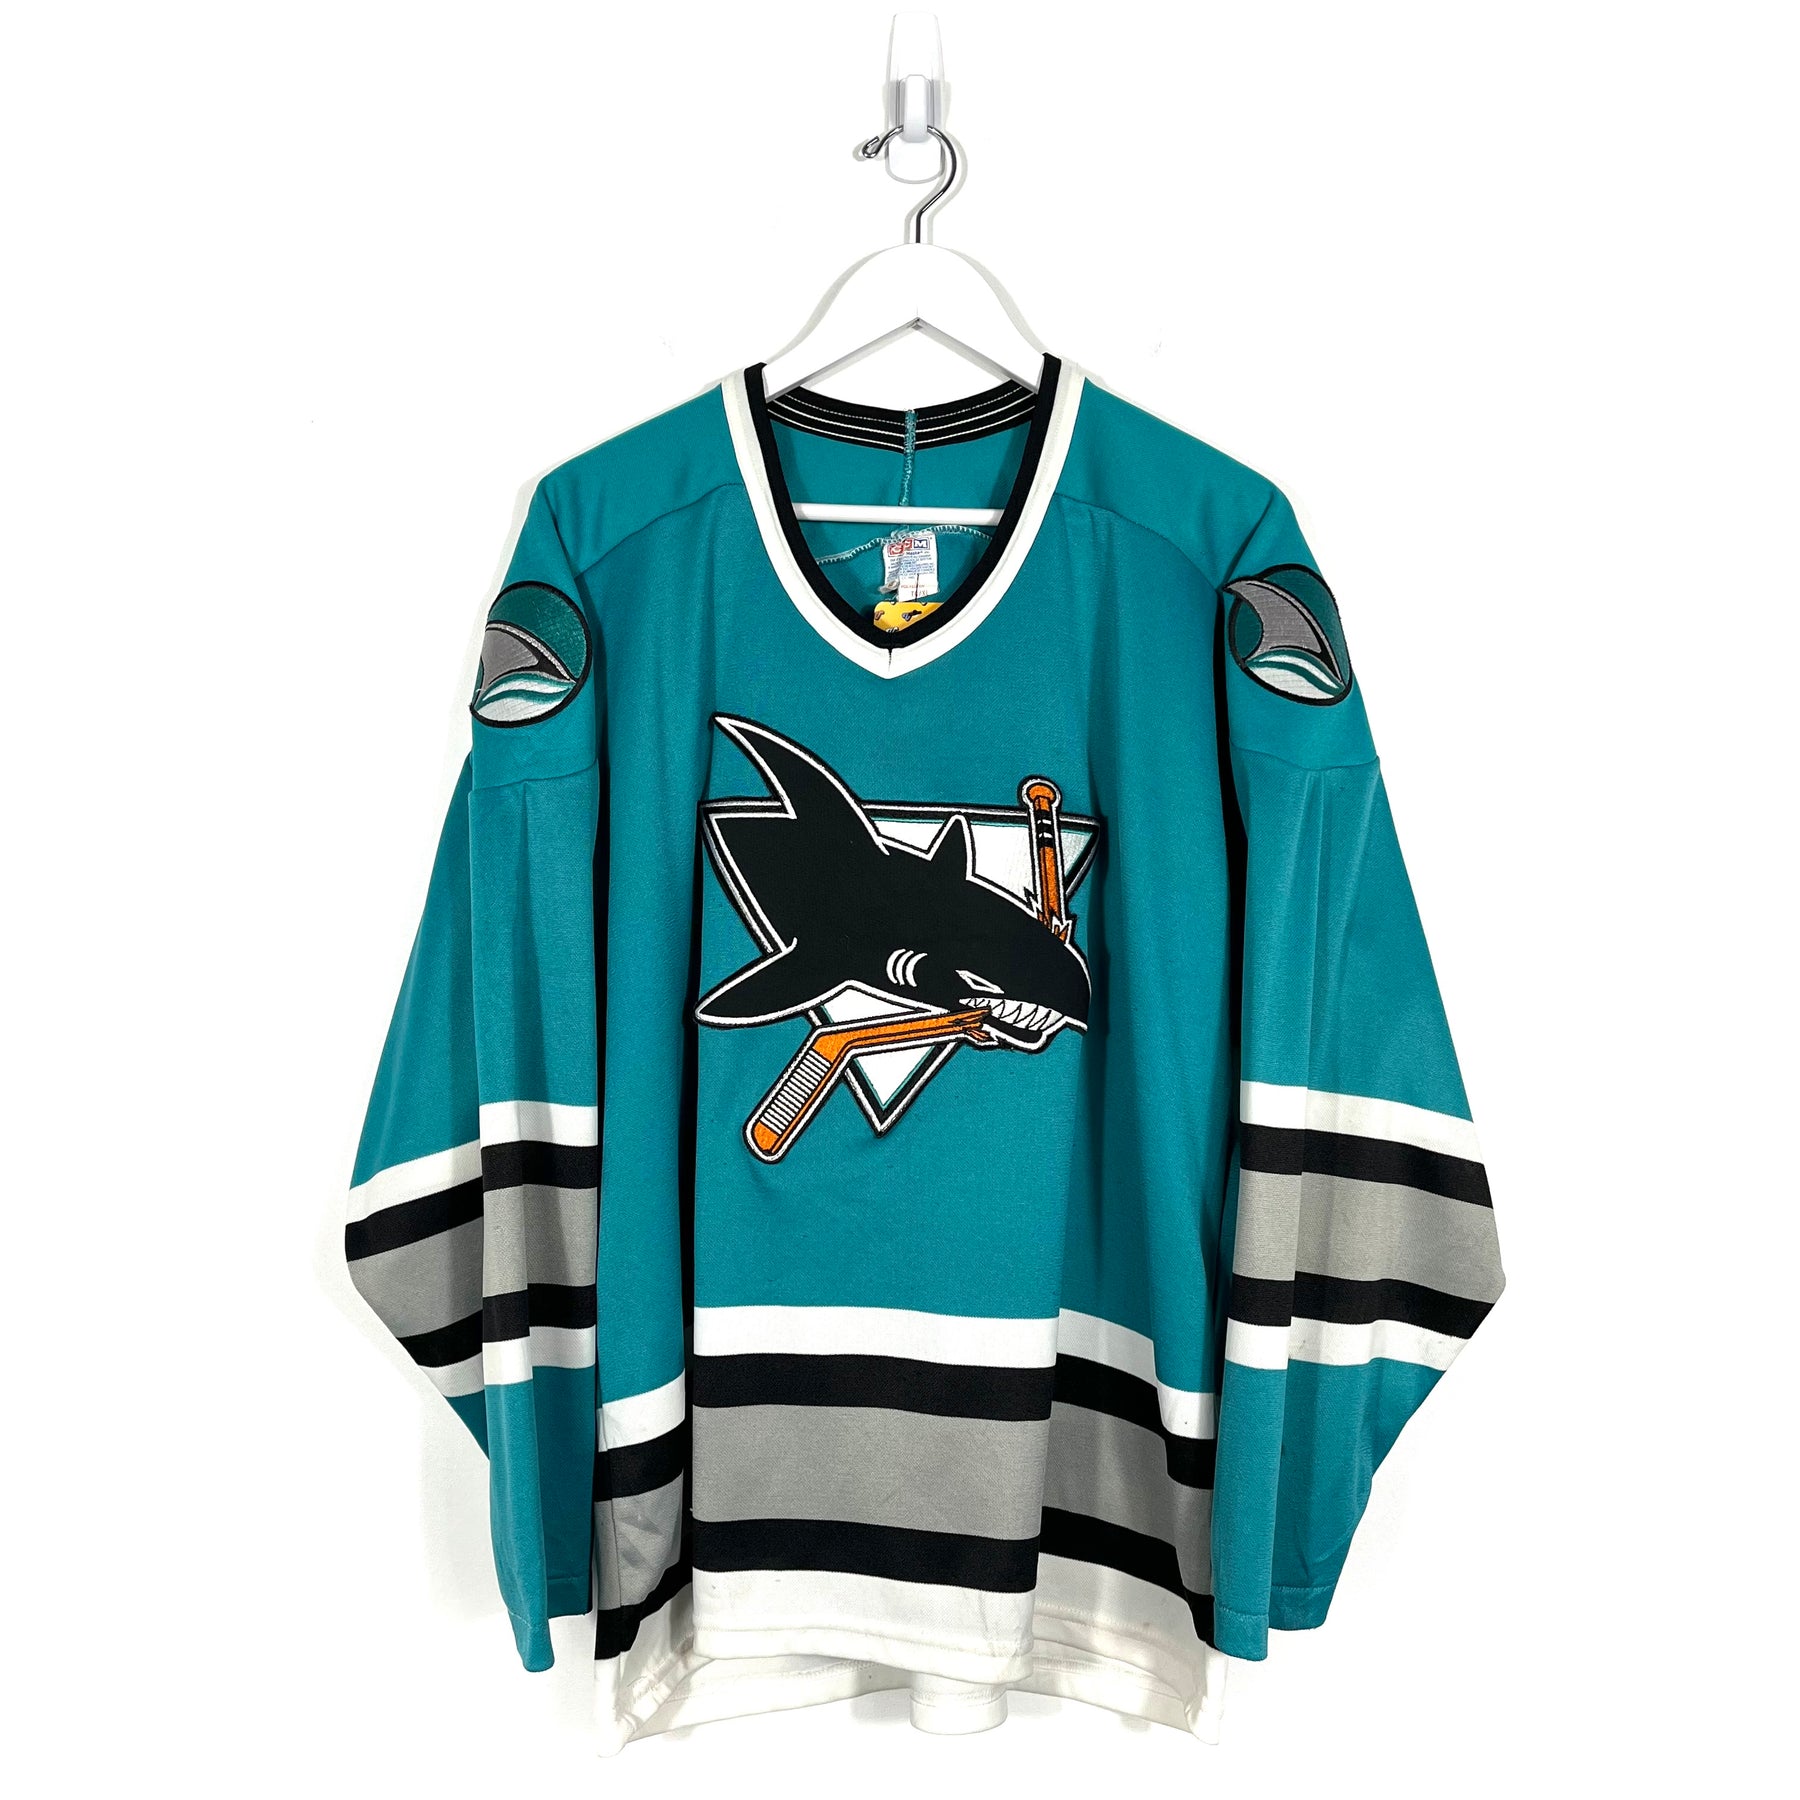 Vintage NHL San Jose Sharks Jersey - Men's Large